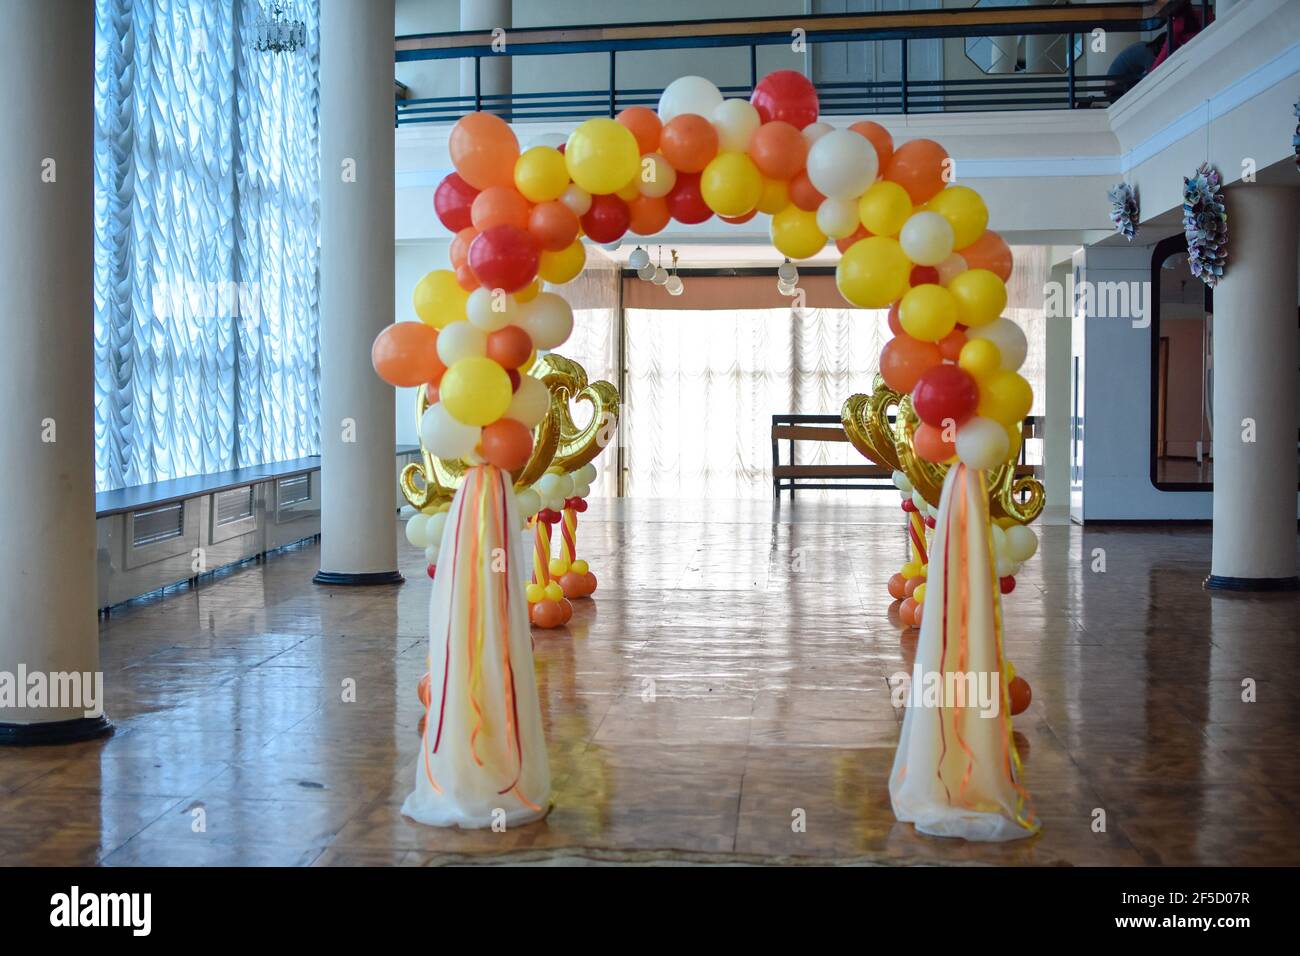 Das Dekor der Ballons für die Hochzeitszeremonie. Stockfoto